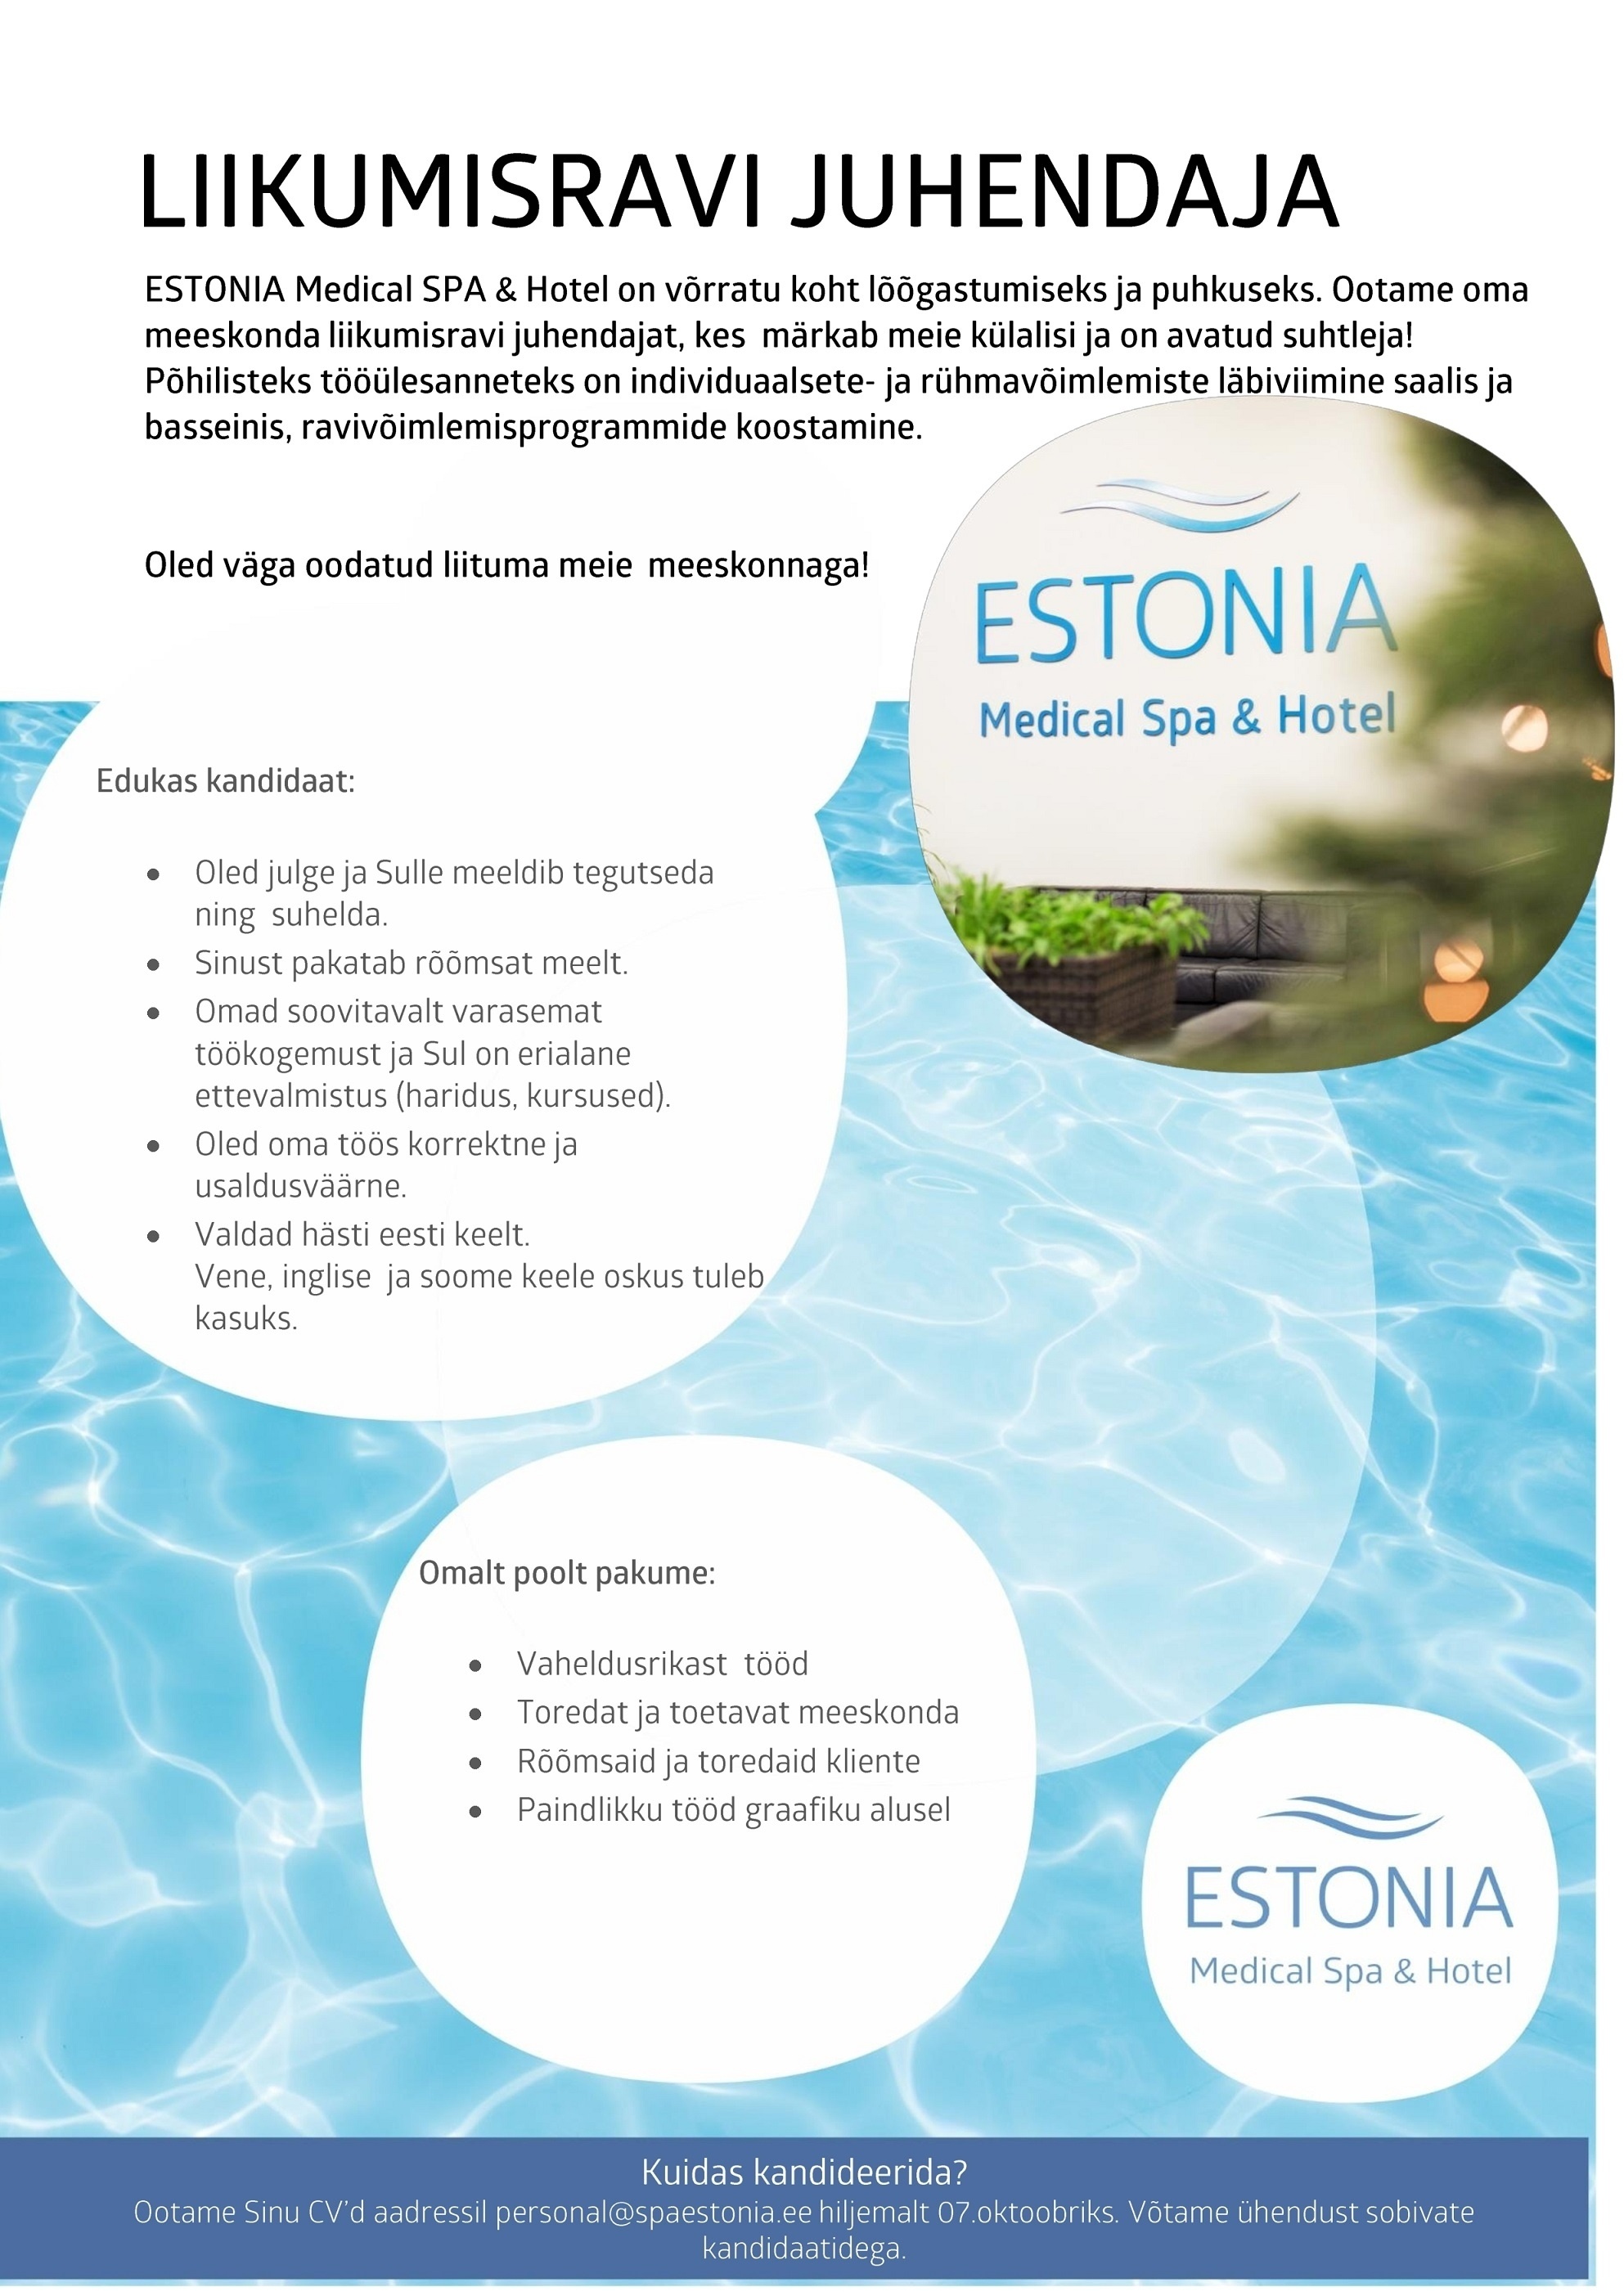 Estonia Spa Hotels AS Liikumisravi juhendaja Estonia Medical Spa&Hotel